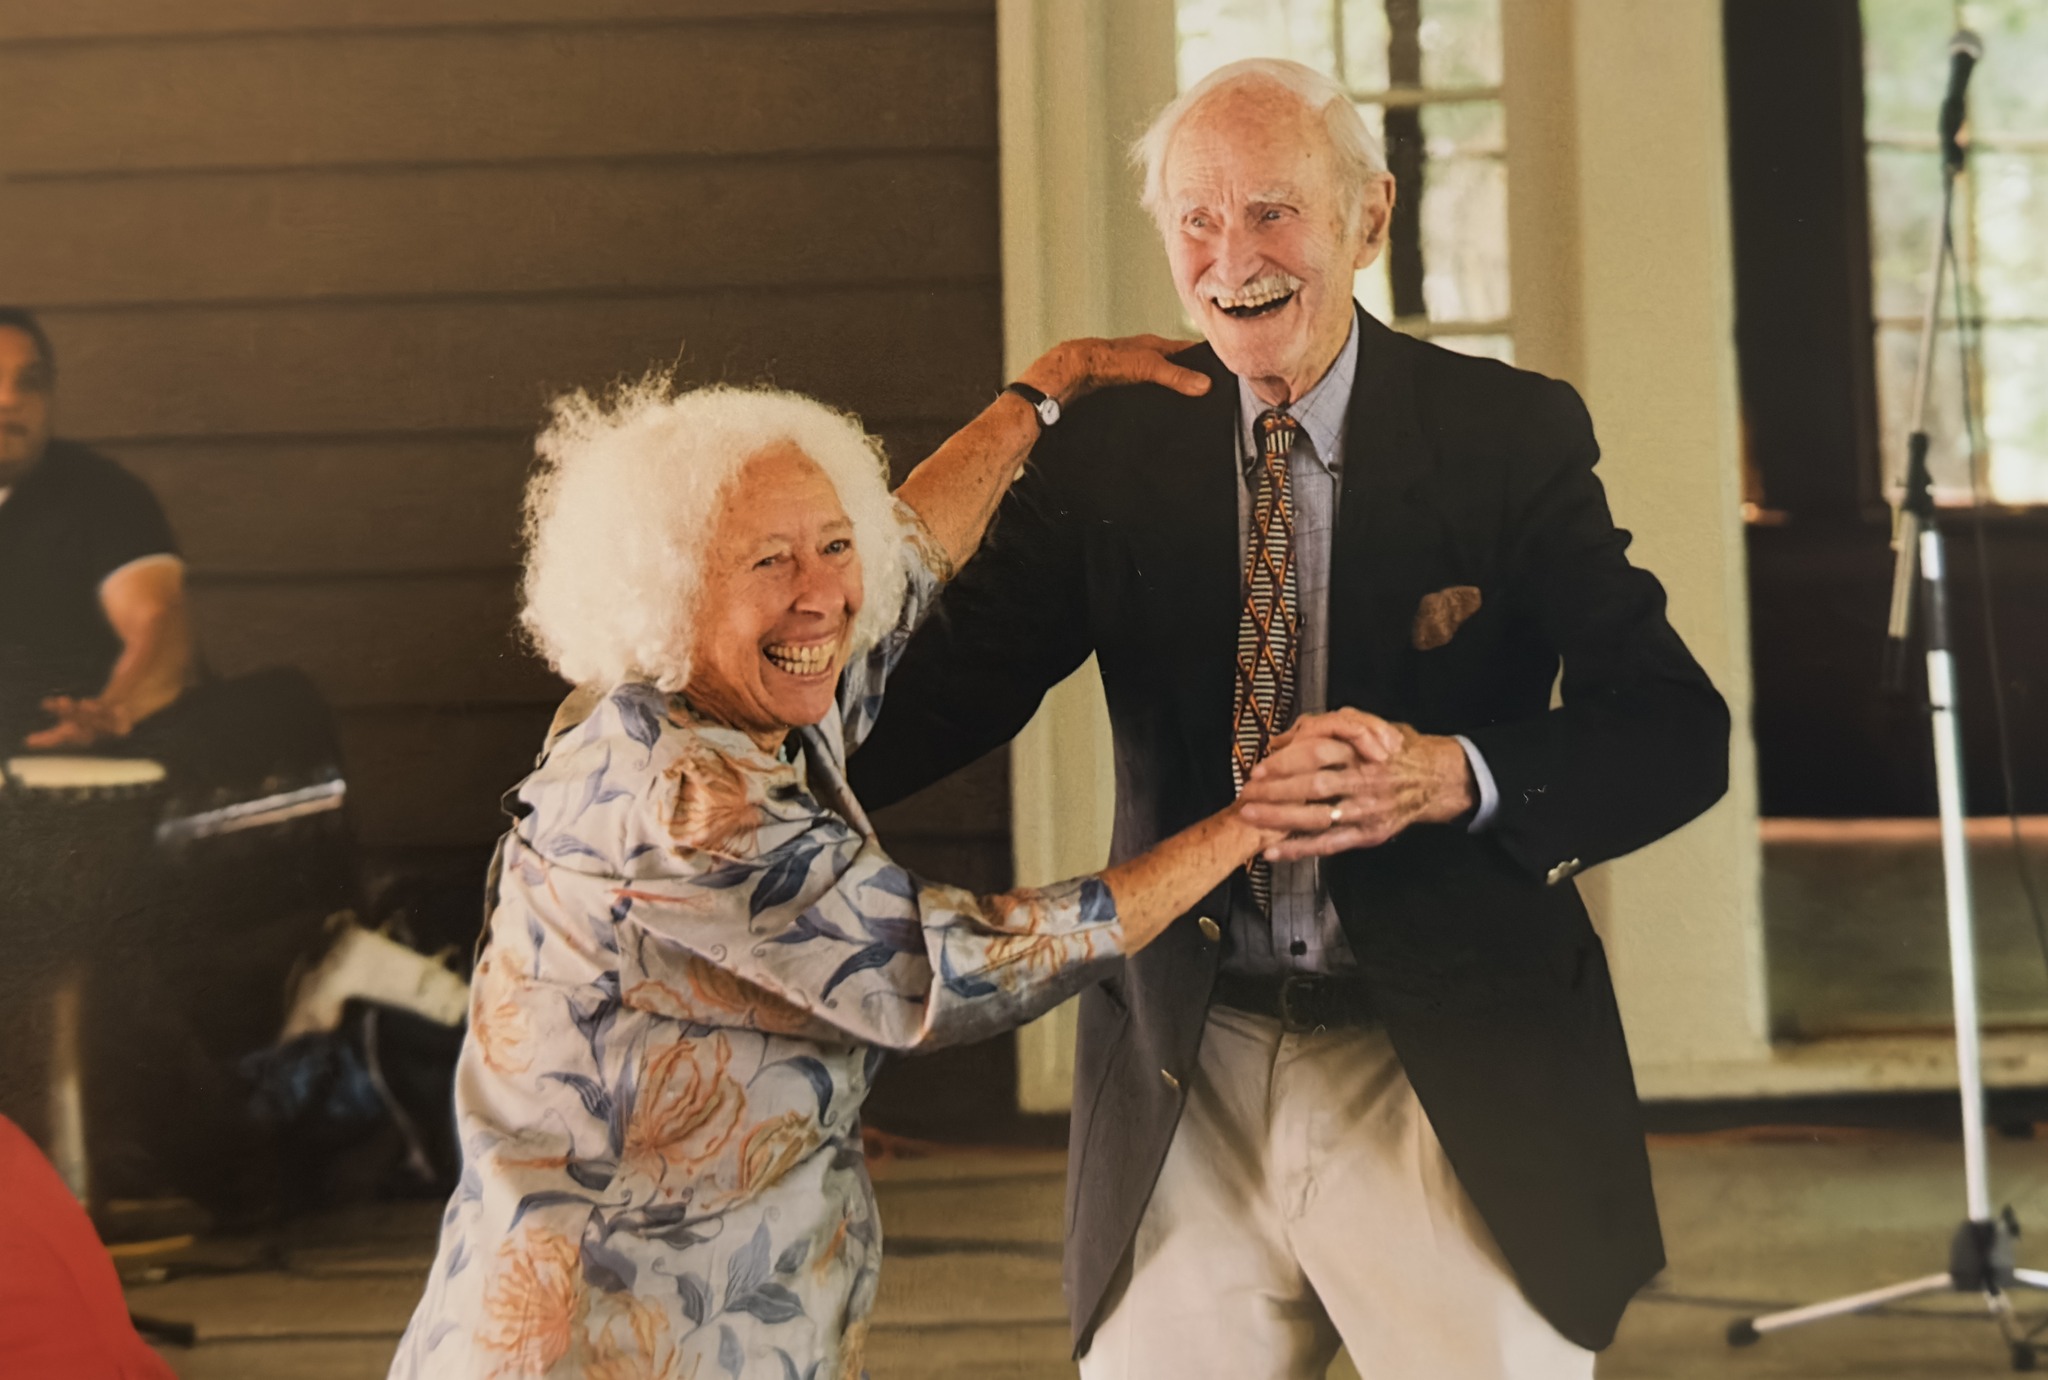 Ann and Dan dancing, 2016